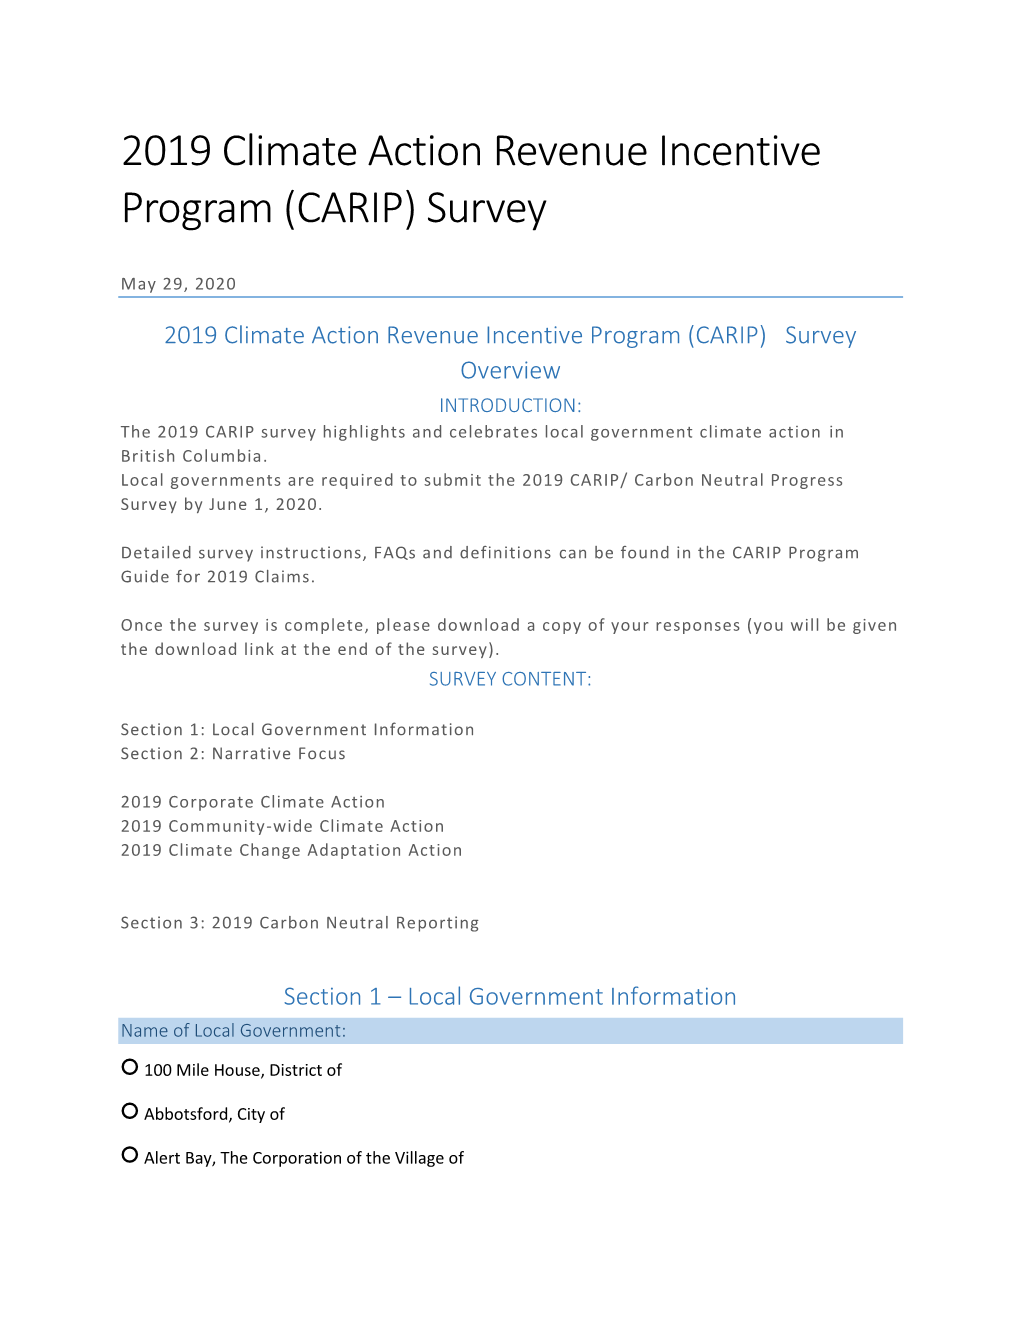 2019 Climate Action Revenue Incentive Program (CARIP) Survey